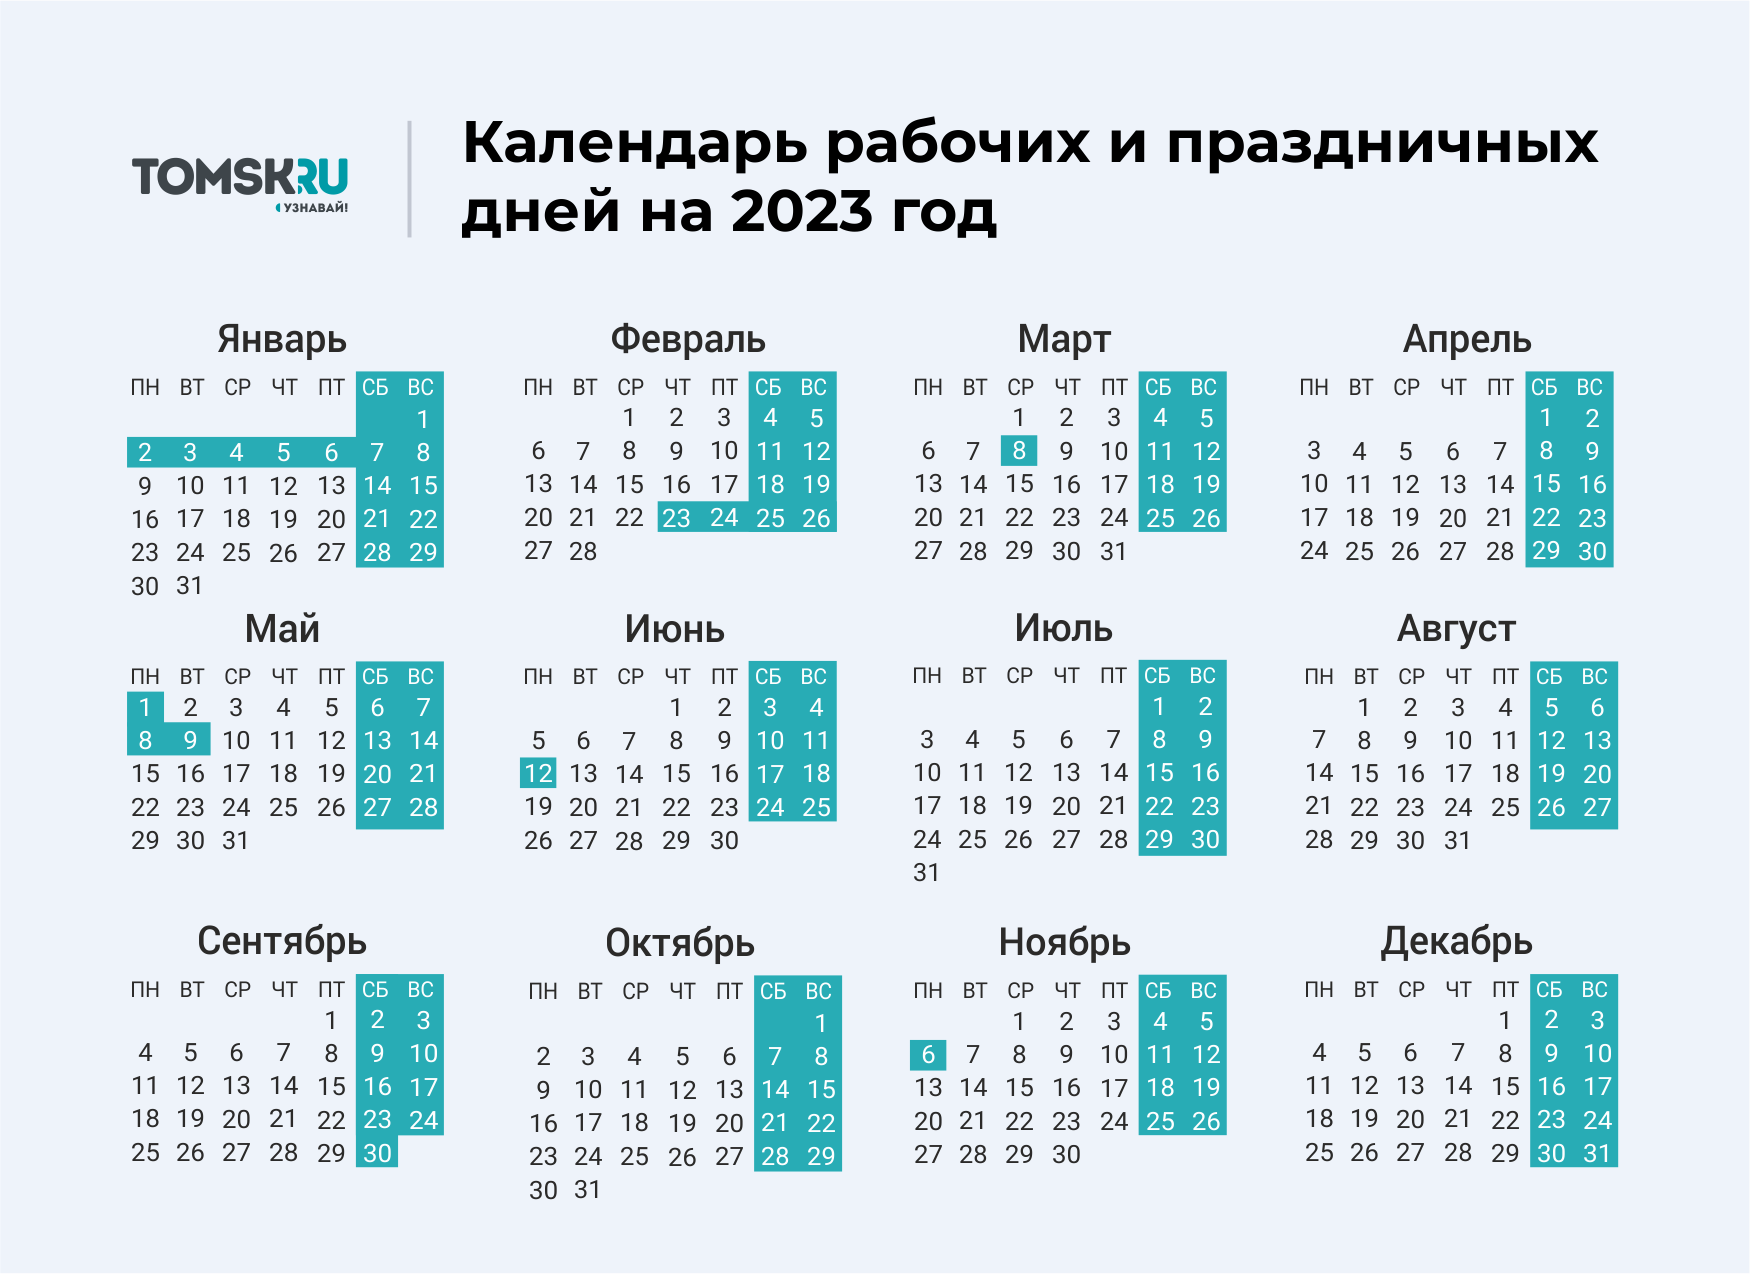 Как будут праздники в мае 2024. Выходные дни в 2023 году в России календарь. Календарь выходных и праздничных дней на 2023 год в России. Календарь праздничных выходеыхв 2023 году. Календарь на 2023 год с праздниками и выходными выходные снизу.